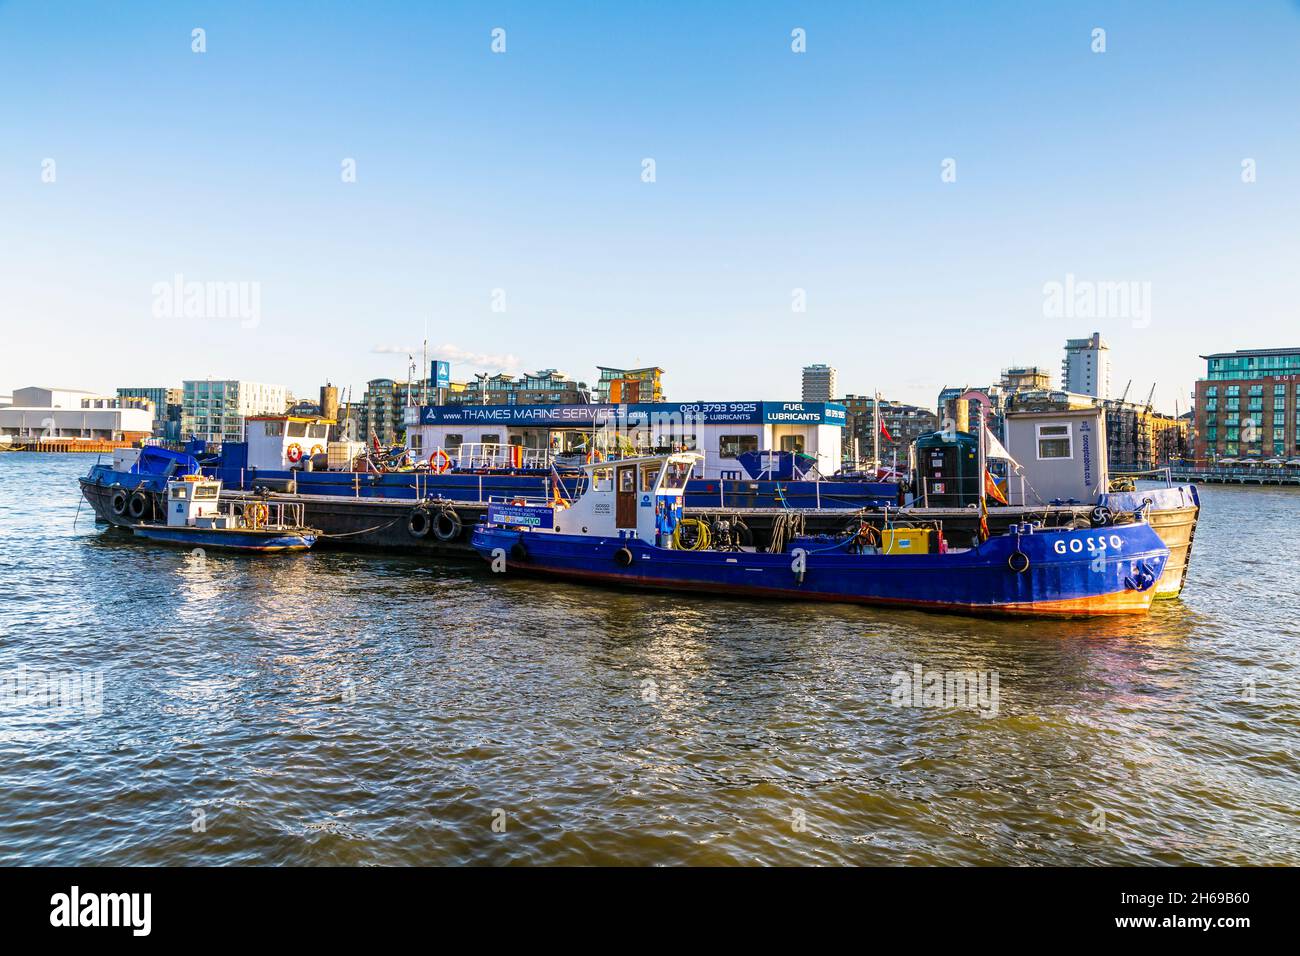 Les barges Thames Marine Services fournissent du carburant aux bateaux sur la Tamise, ancrés près de Wapping, Londres, Royaume-Uni Banque D'Images